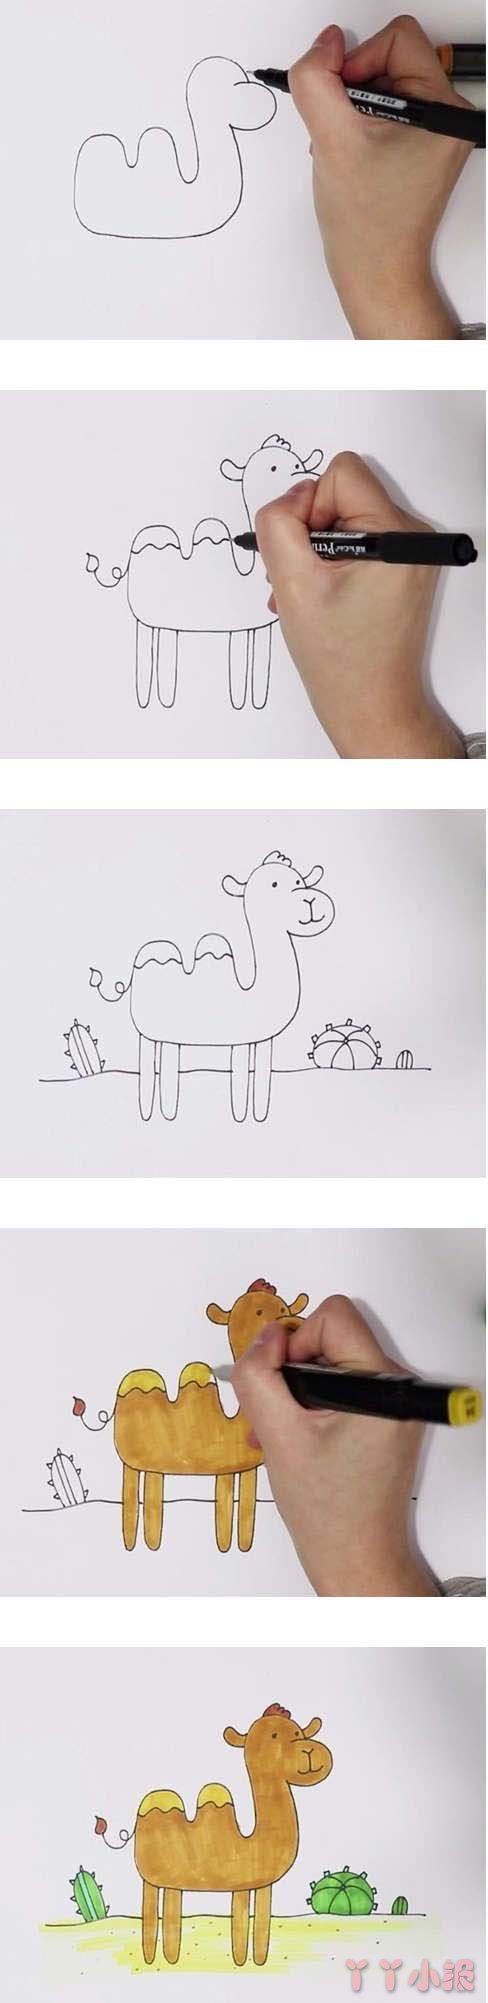  教你怎么画骆驼简笔画步骤教程涂颜色